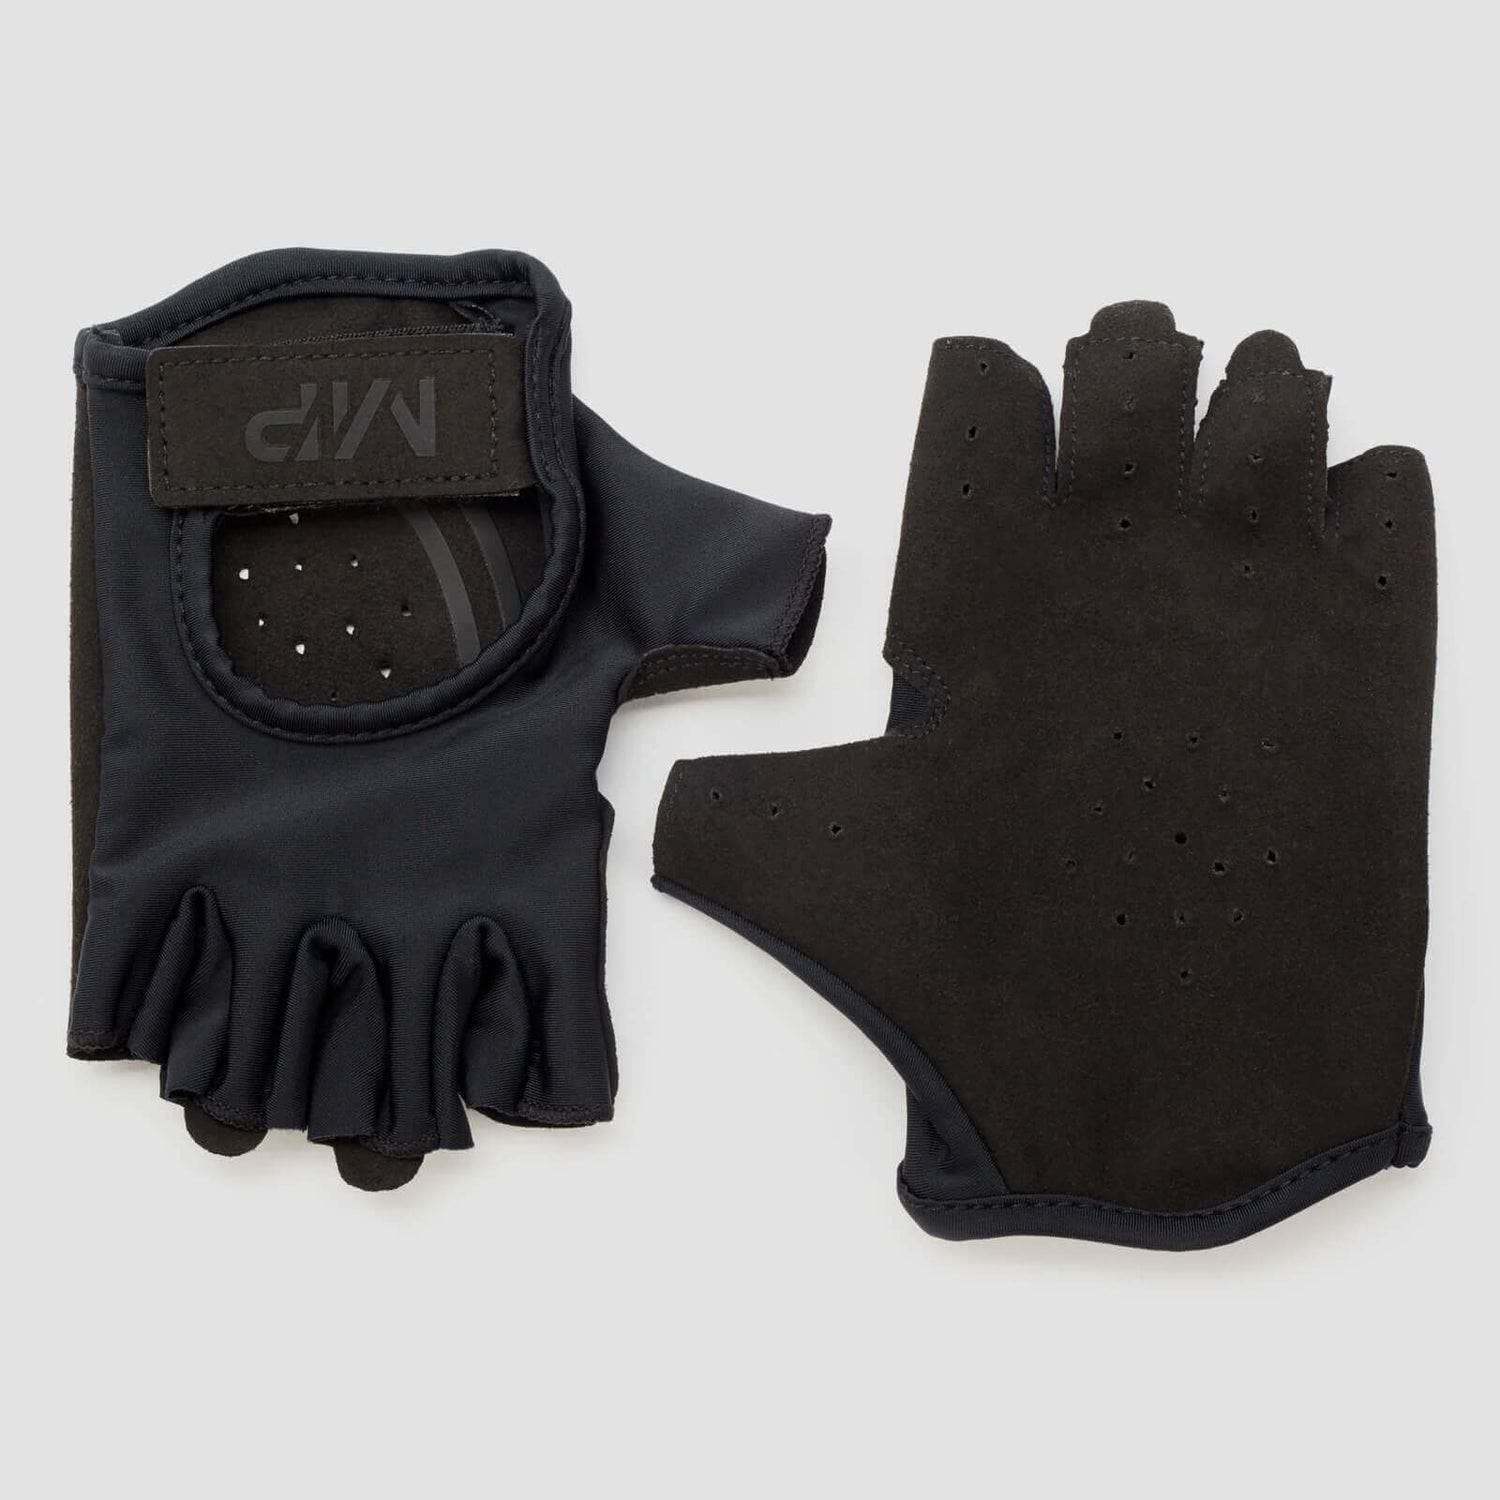 MP Men's Lifting Gloves -käsineet - Musta - L